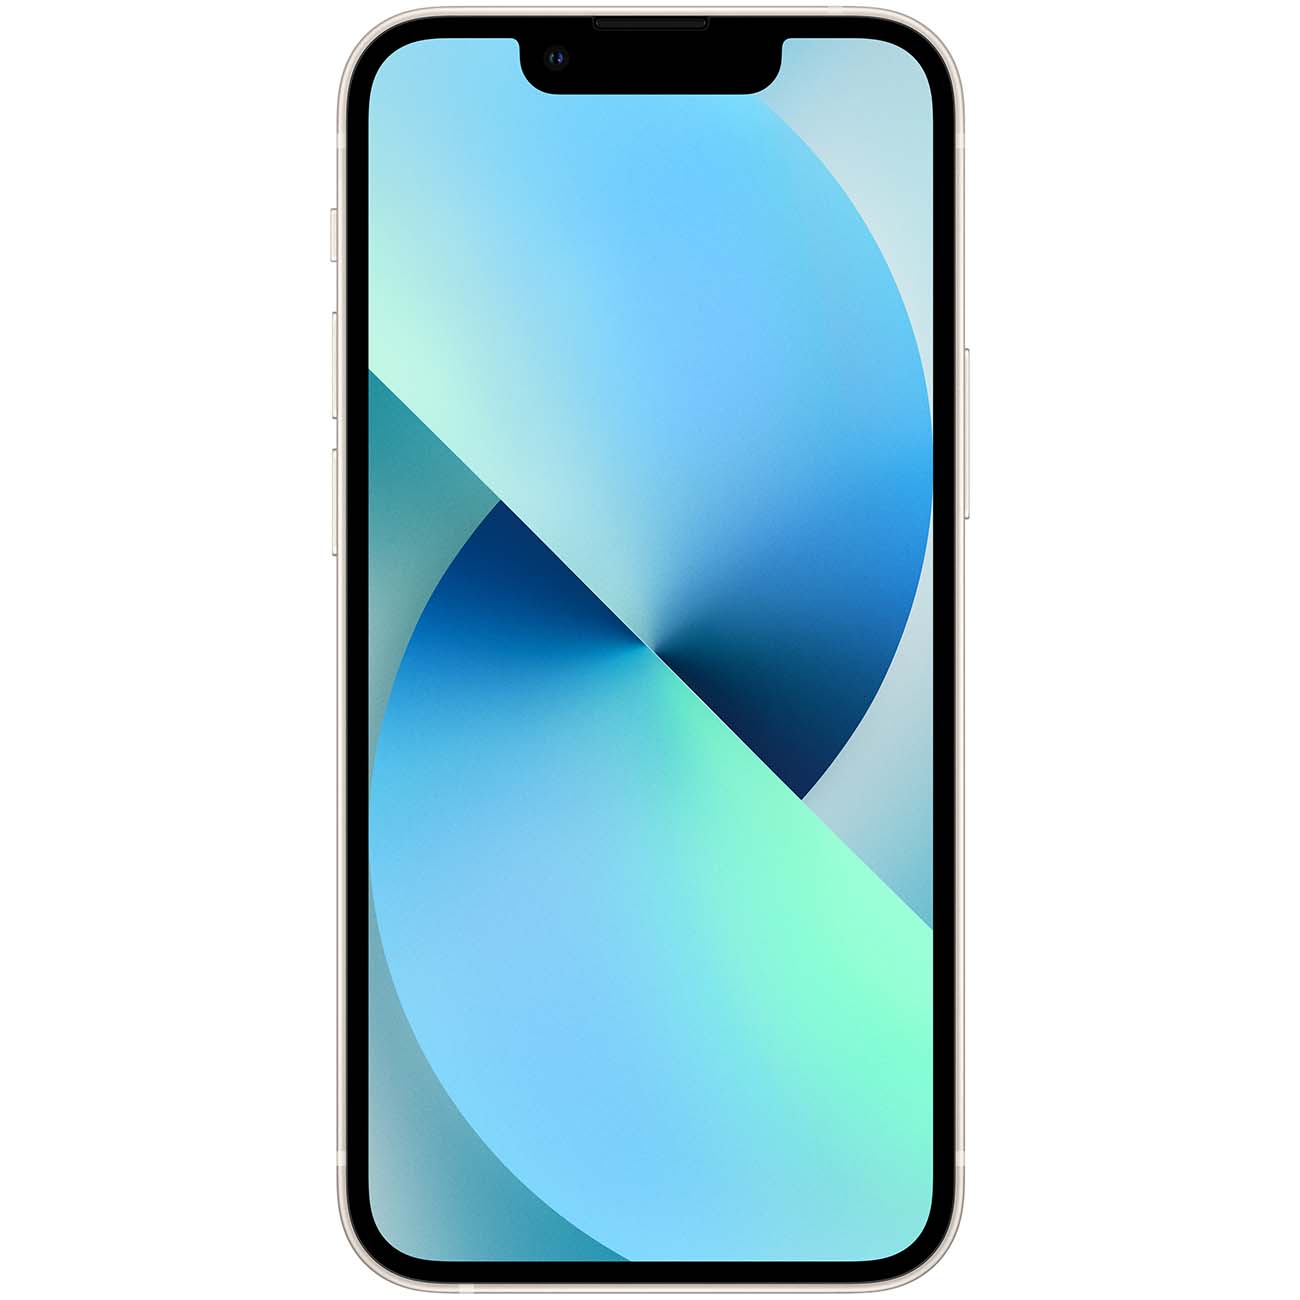 Купить смартфон apple iphone 13 512gb starlight Apple iPhone 13 в официальном магазине Apple, Samsung, Xiaomi. iPixel.ru Купить, заказ, кредит, рассрочка, отзывы,  характеристики, цена,  фотографии, в подарок.